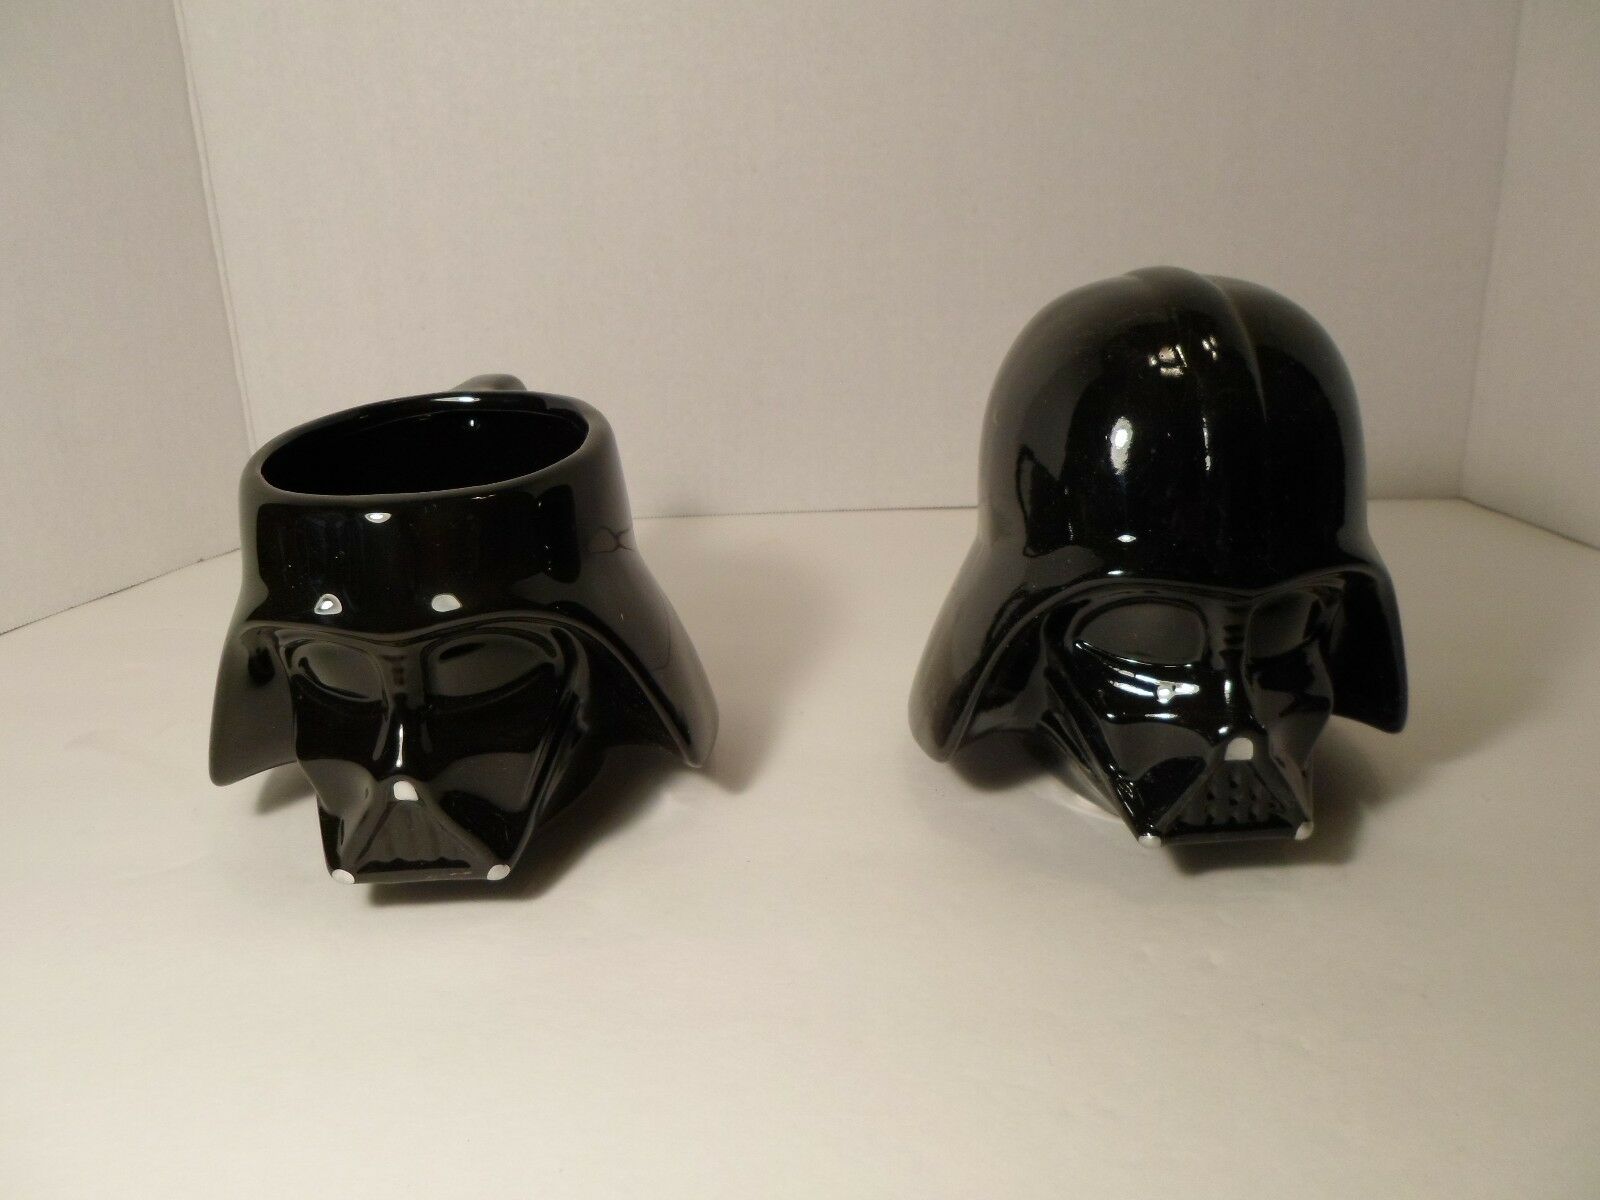 Star Wars - Darth Vader Sculpted Ceramic Mug